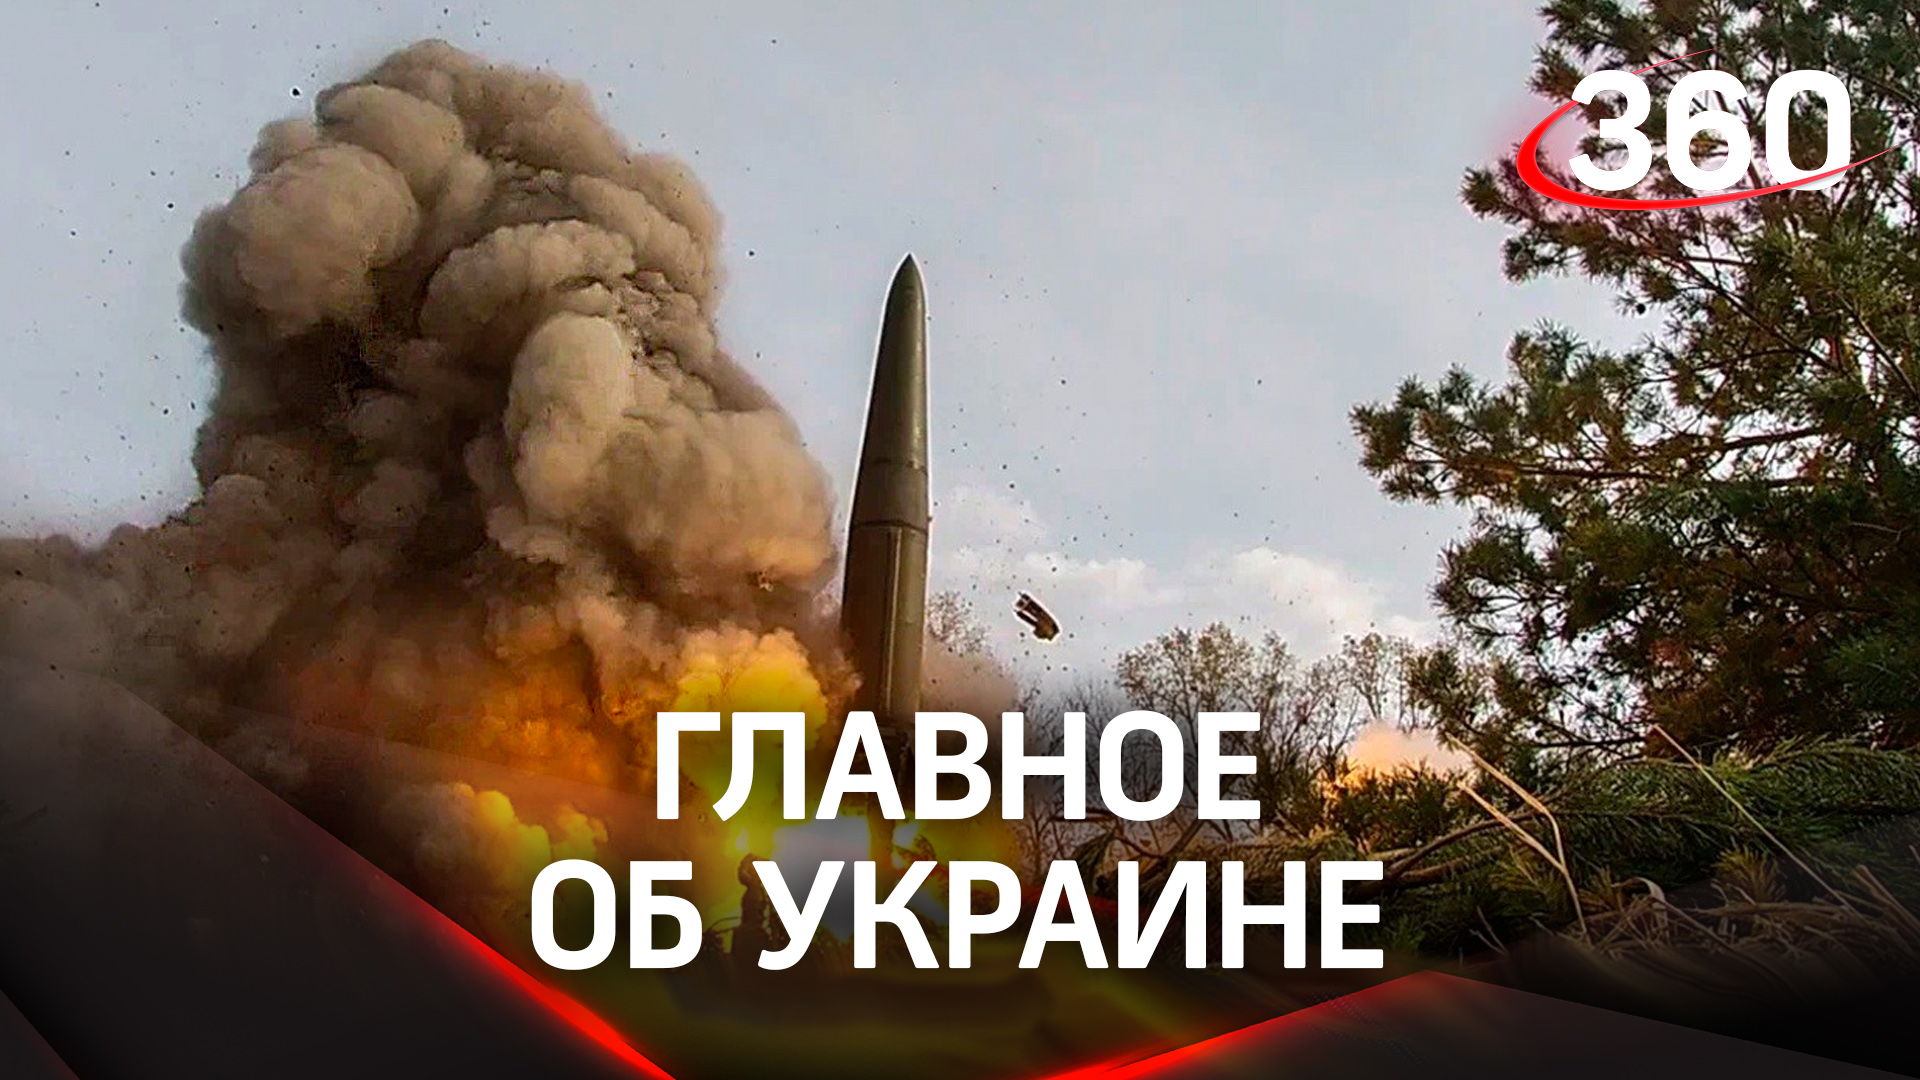 Наносились ли сегодня удары по украине. Ракетные удары по Украине.